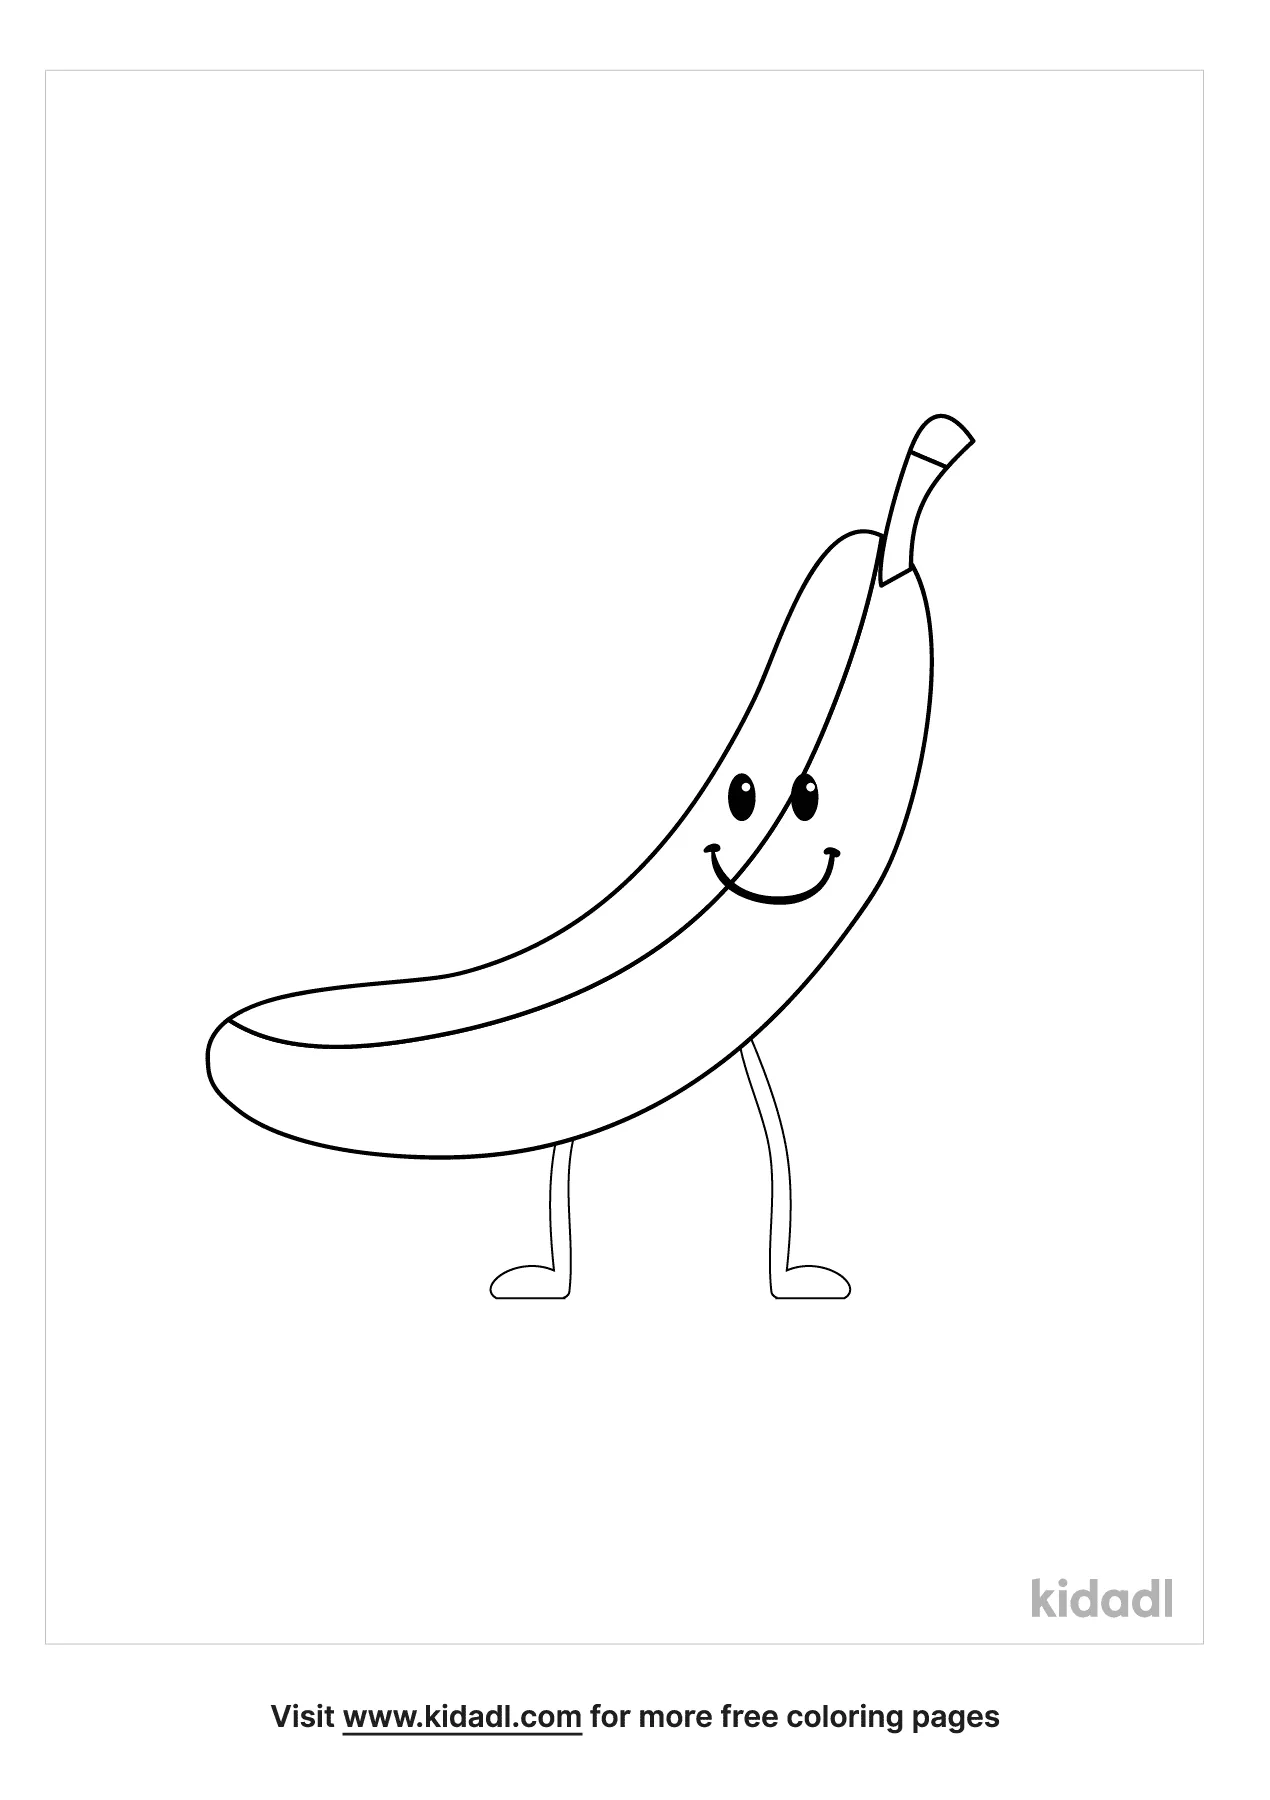 Dancing Banana Coloring Page